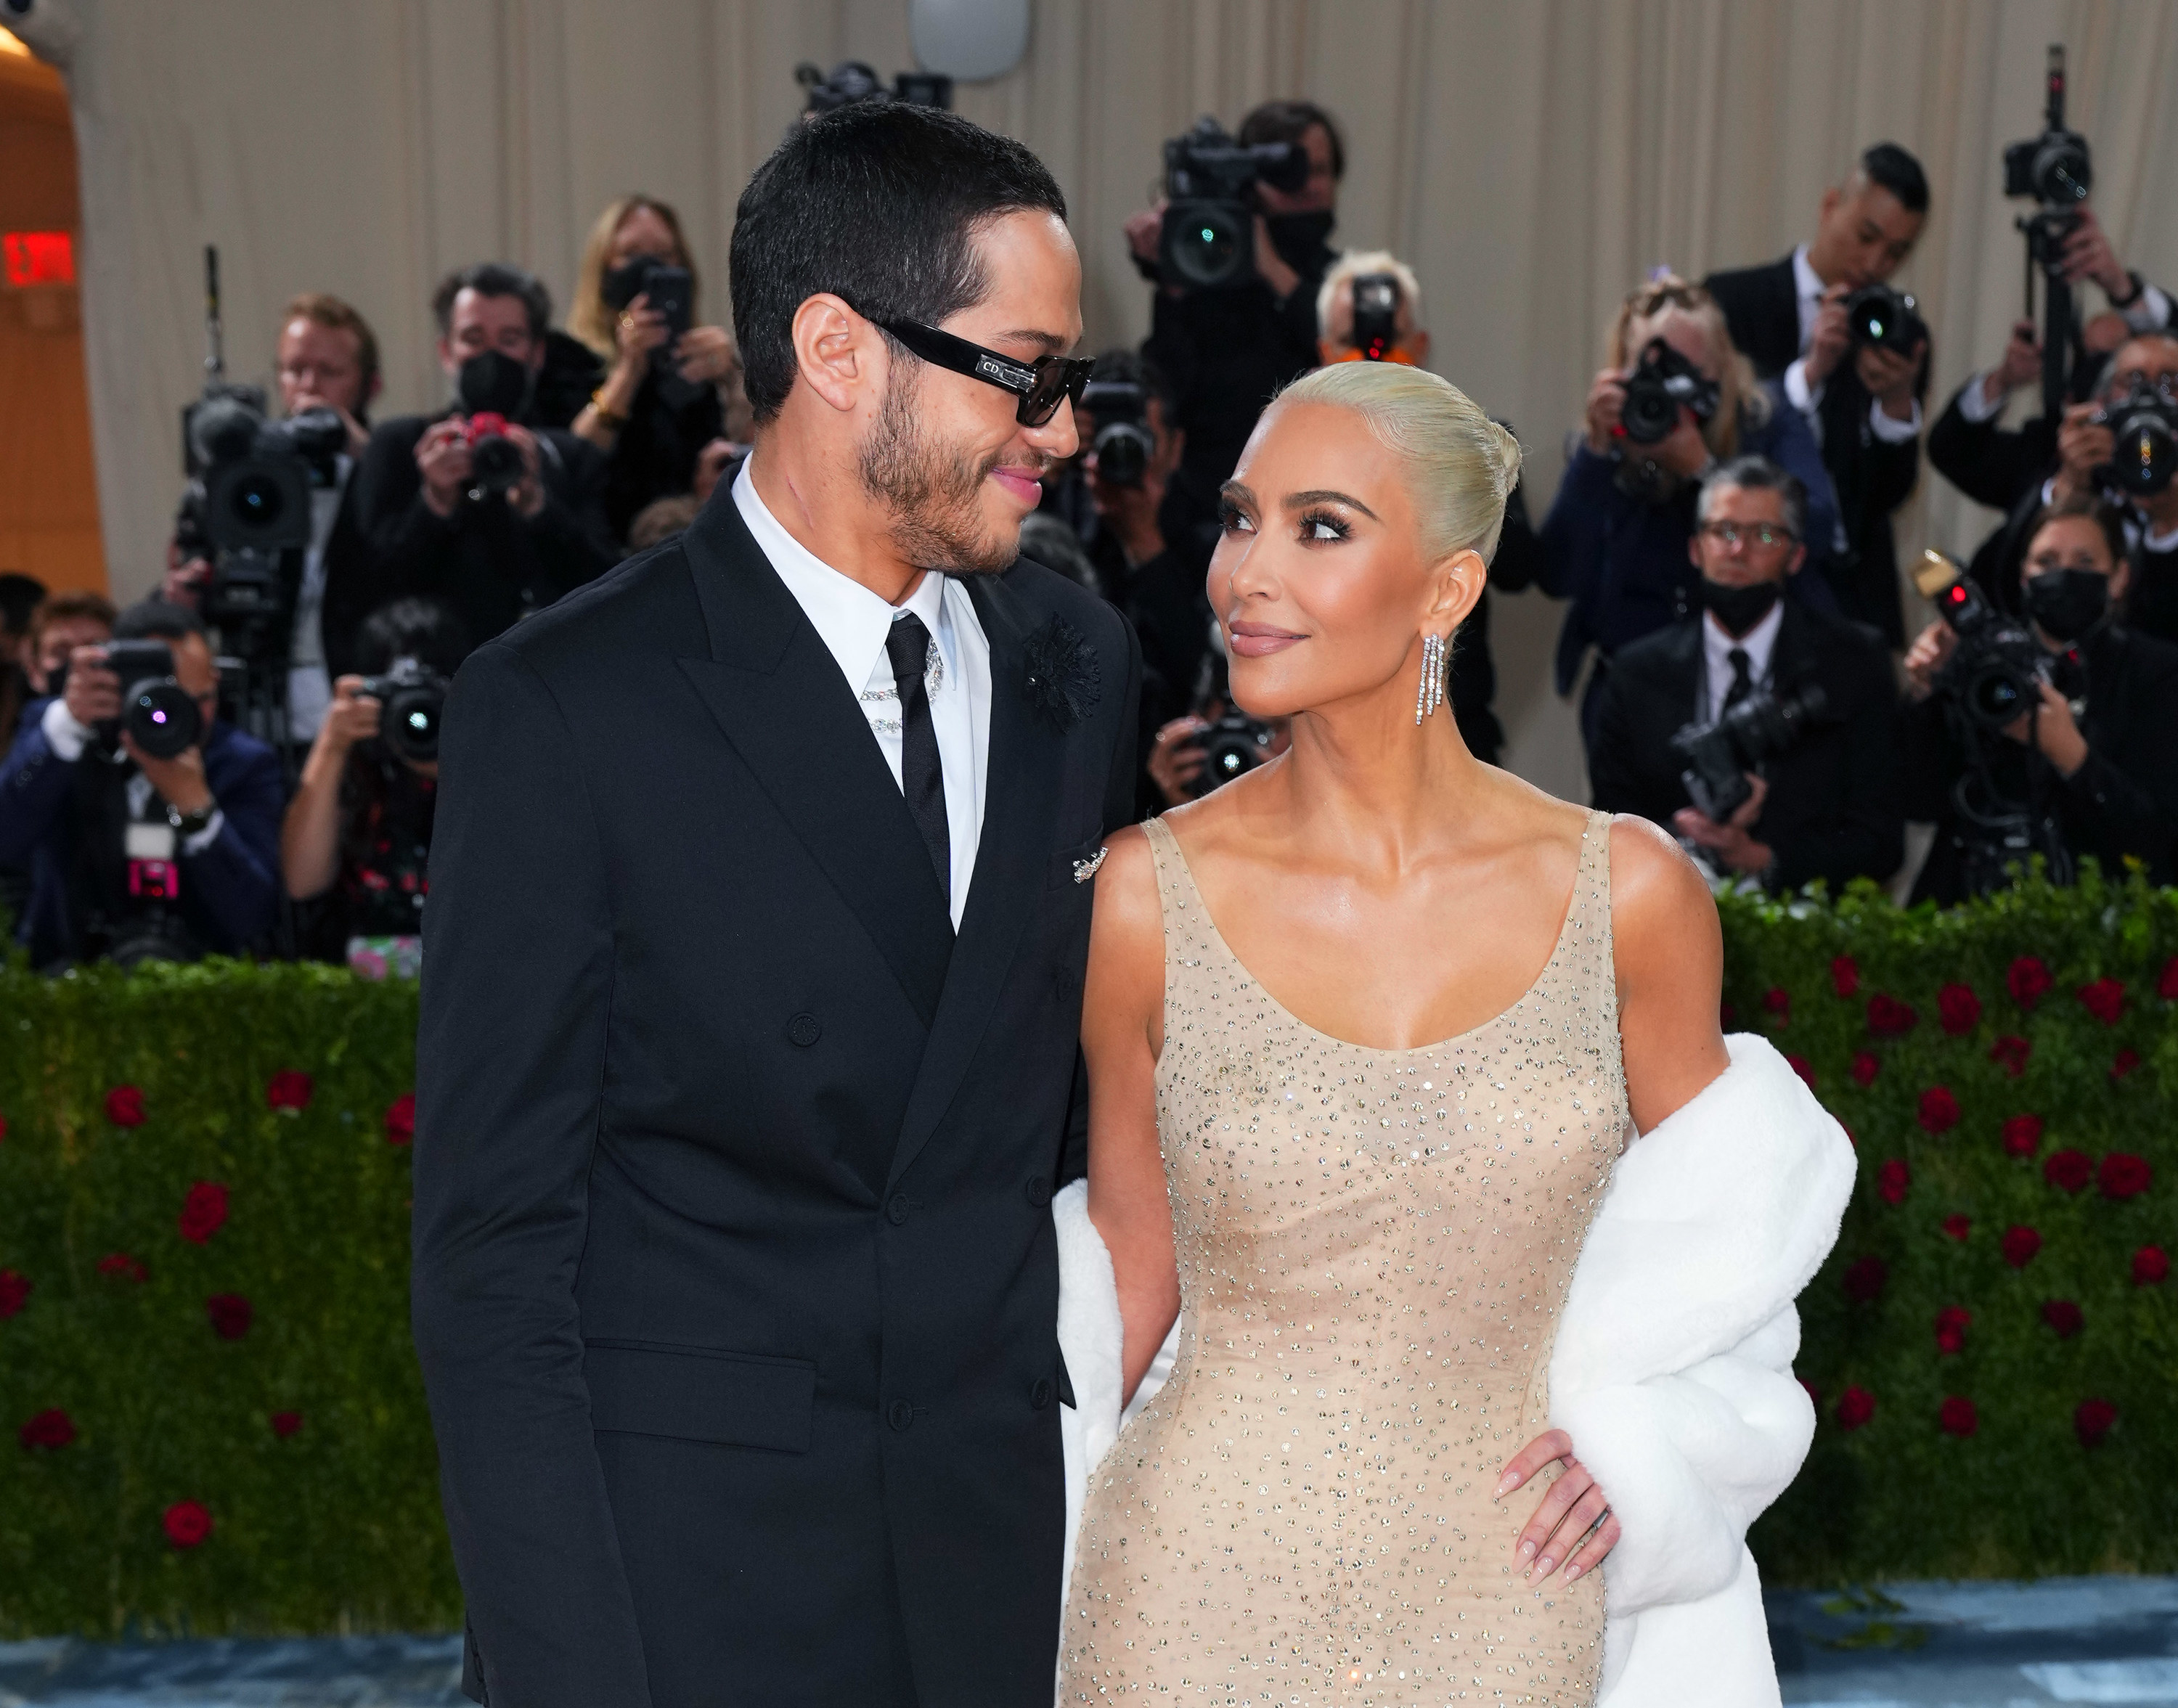 Kim Kardashian & Marilyn Monroe Dress: Famous Leverage Art For Brands –